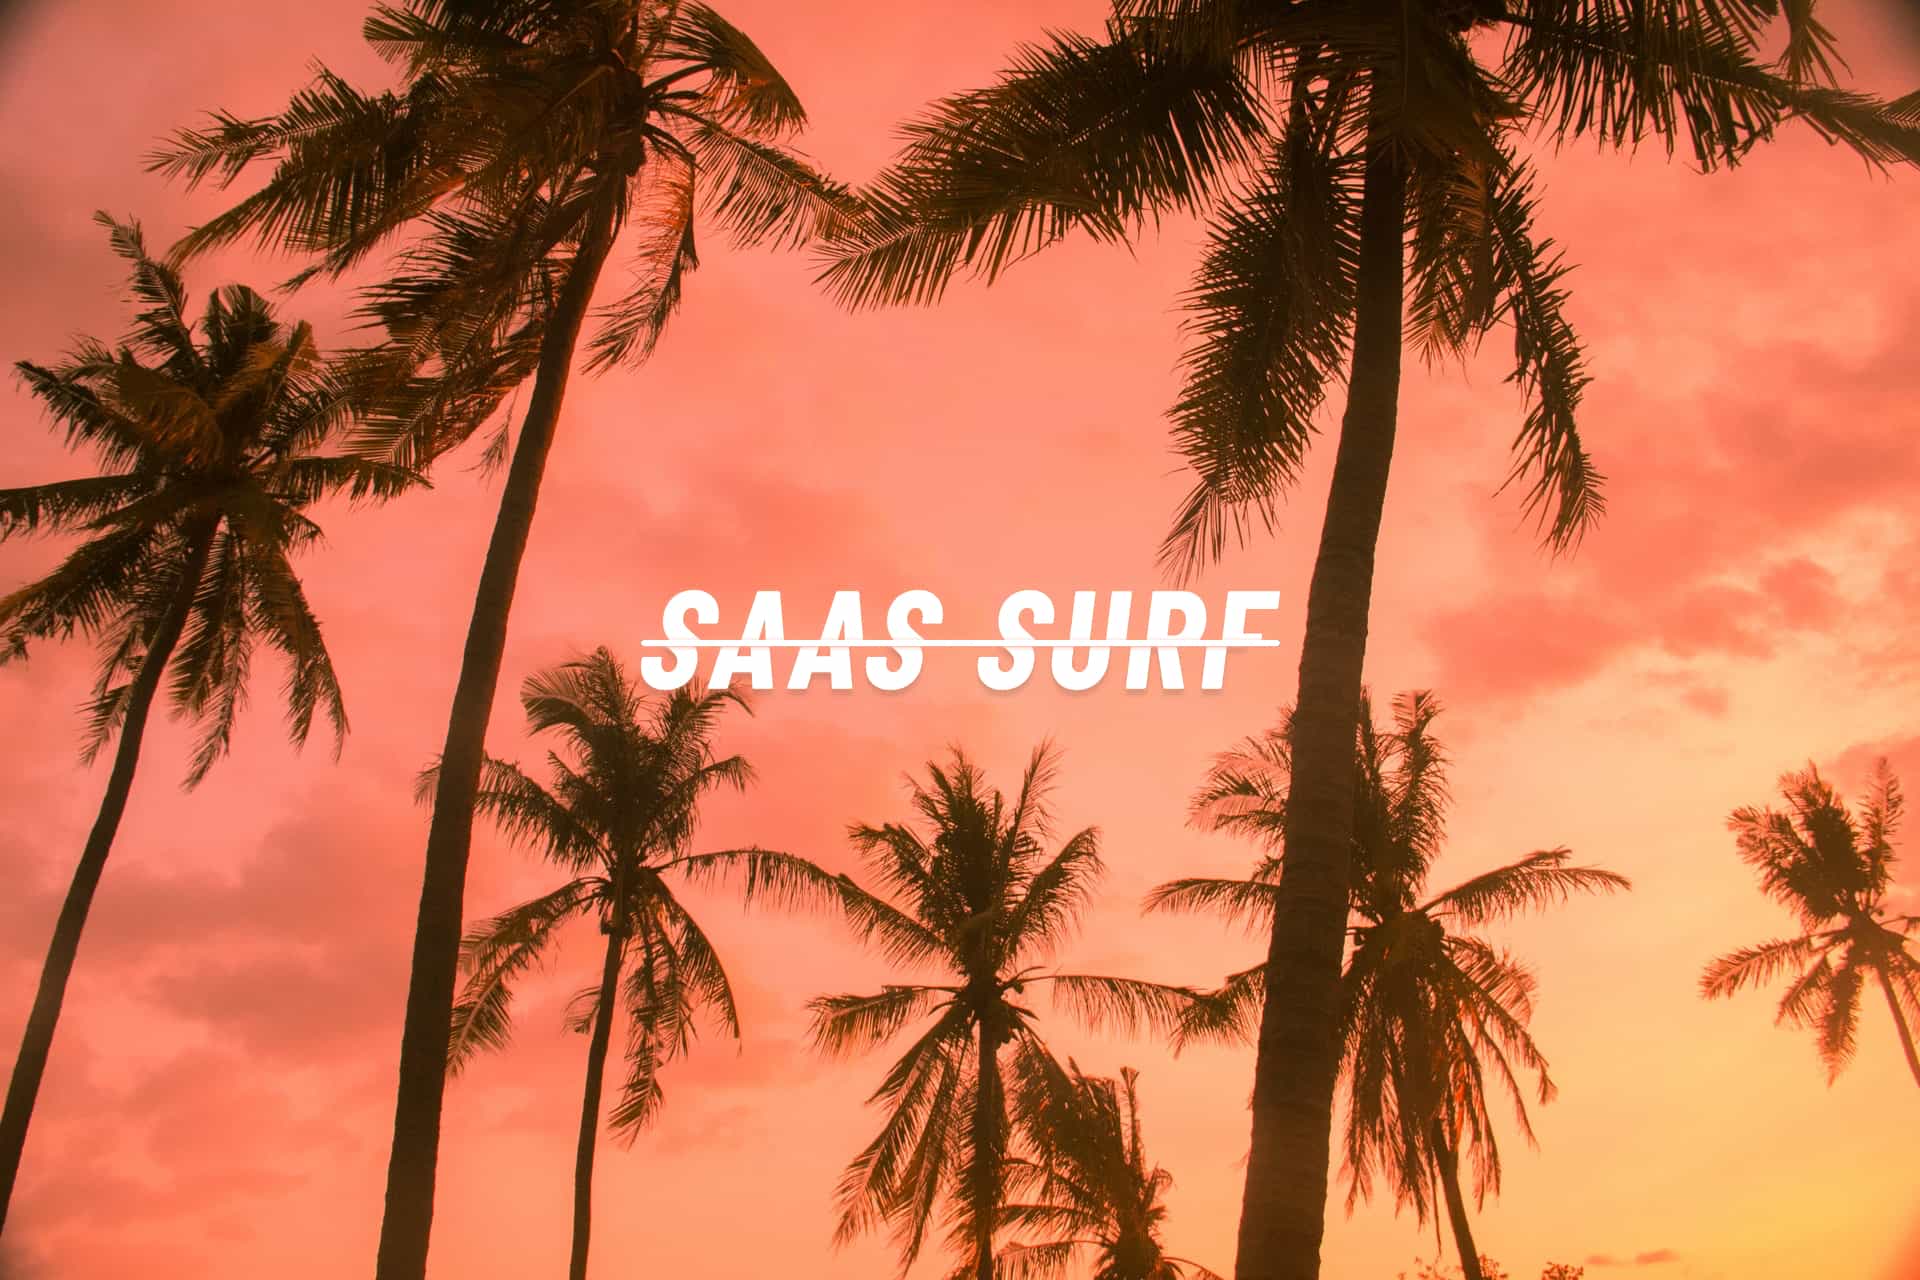 SaaS Surf